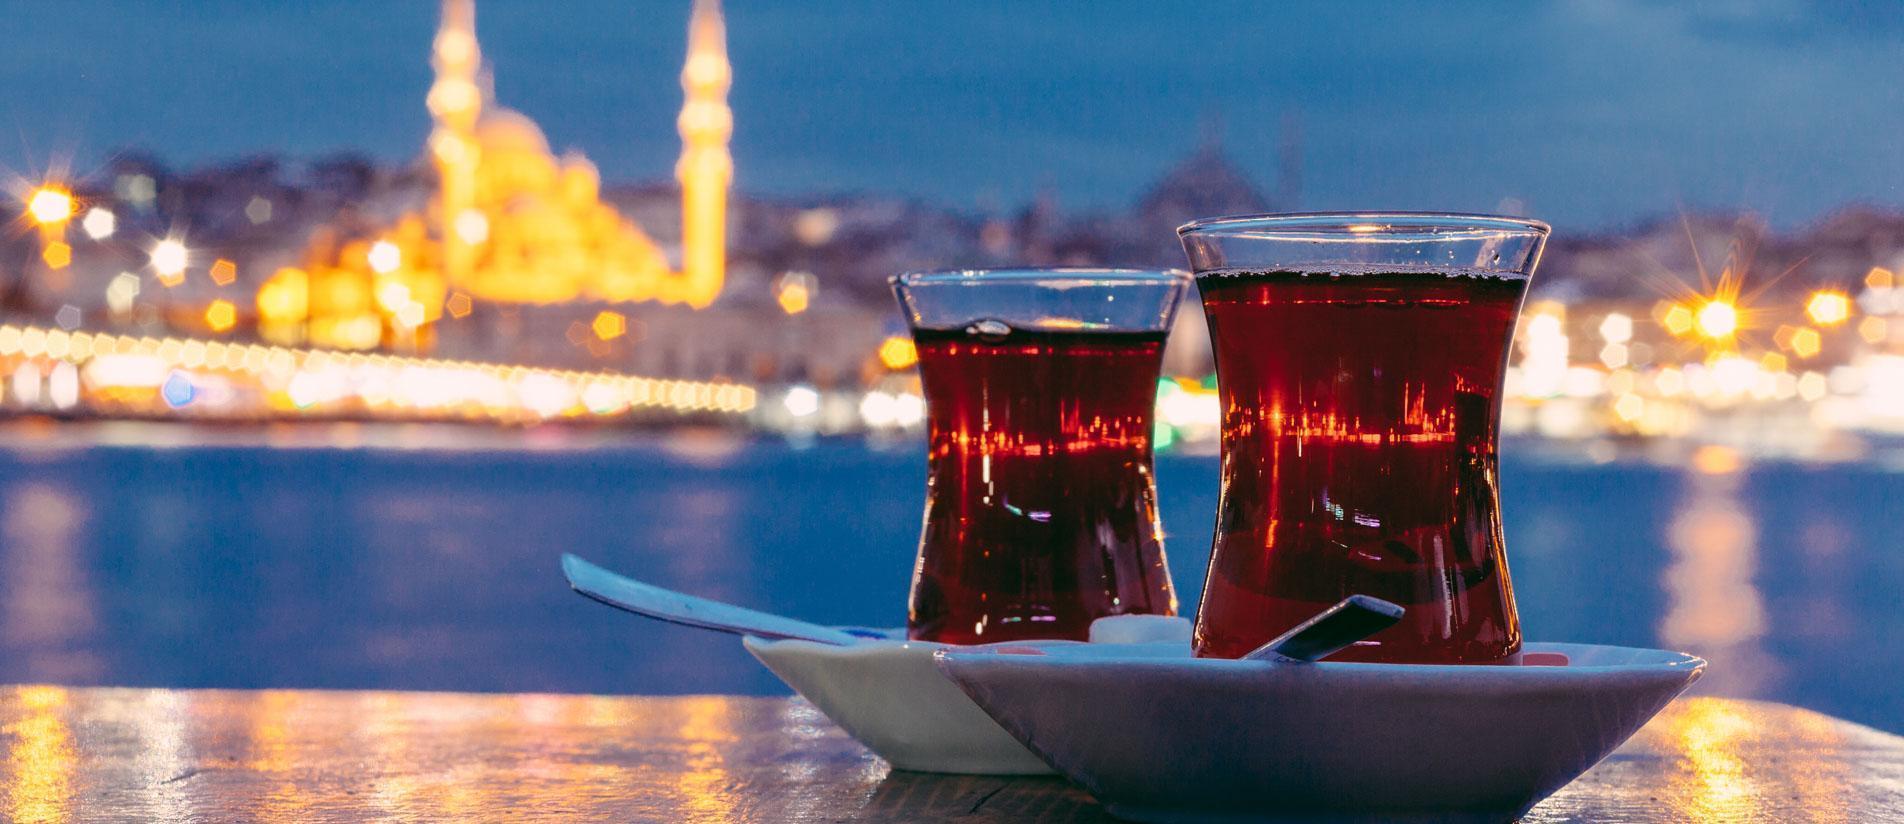 Новости - Горящие туры в Турцию из Москвы от 18750 рублей с человека на 7 ночей (все включено)!